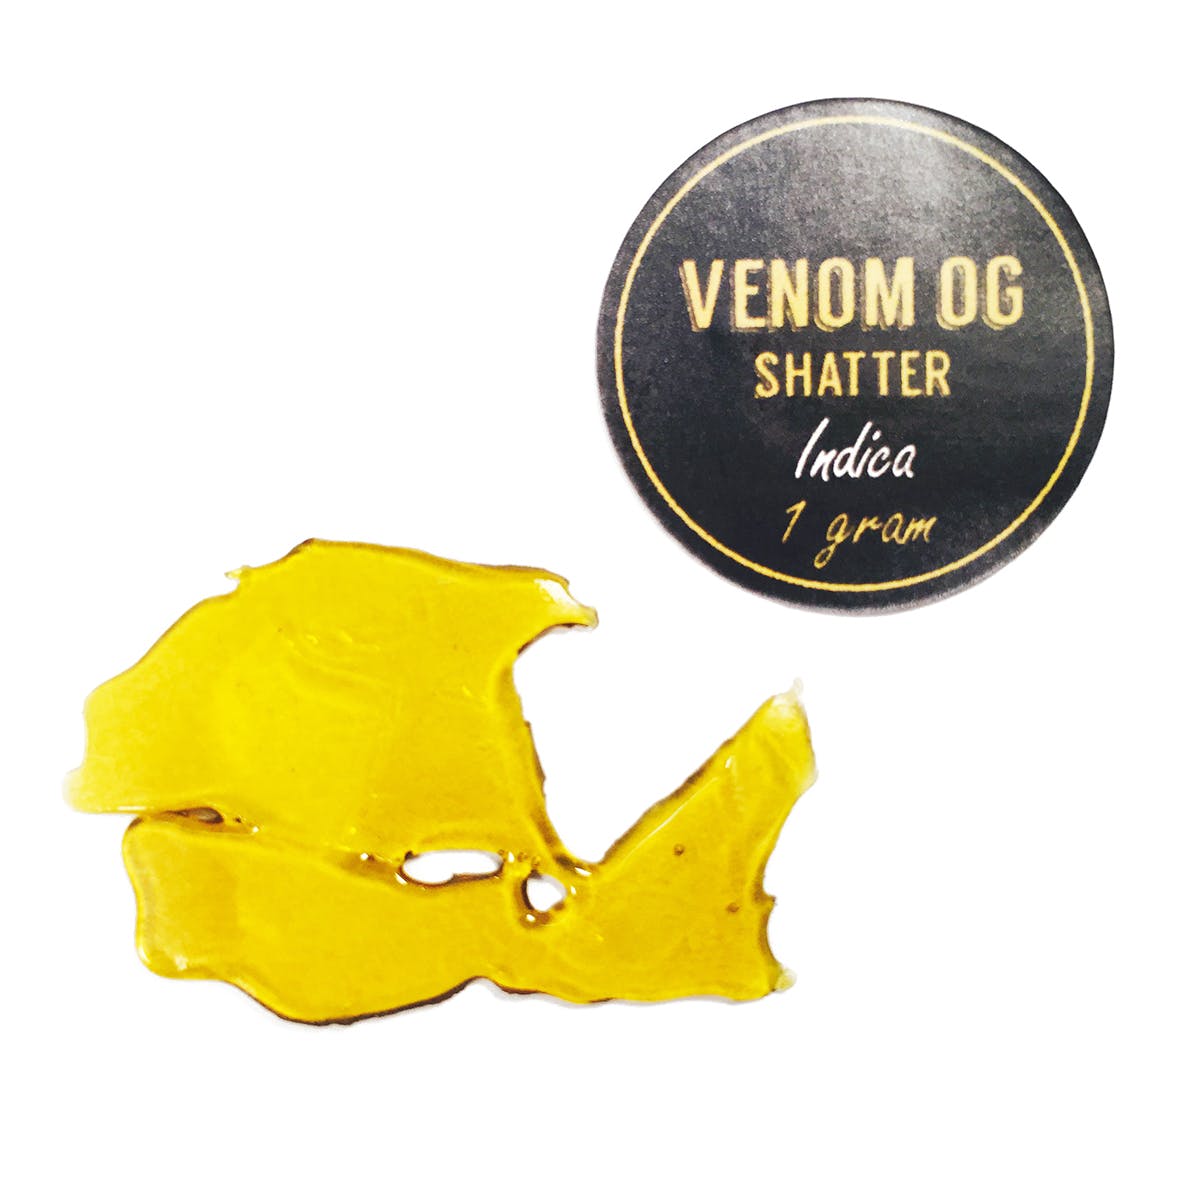 Venom OG - Shatter